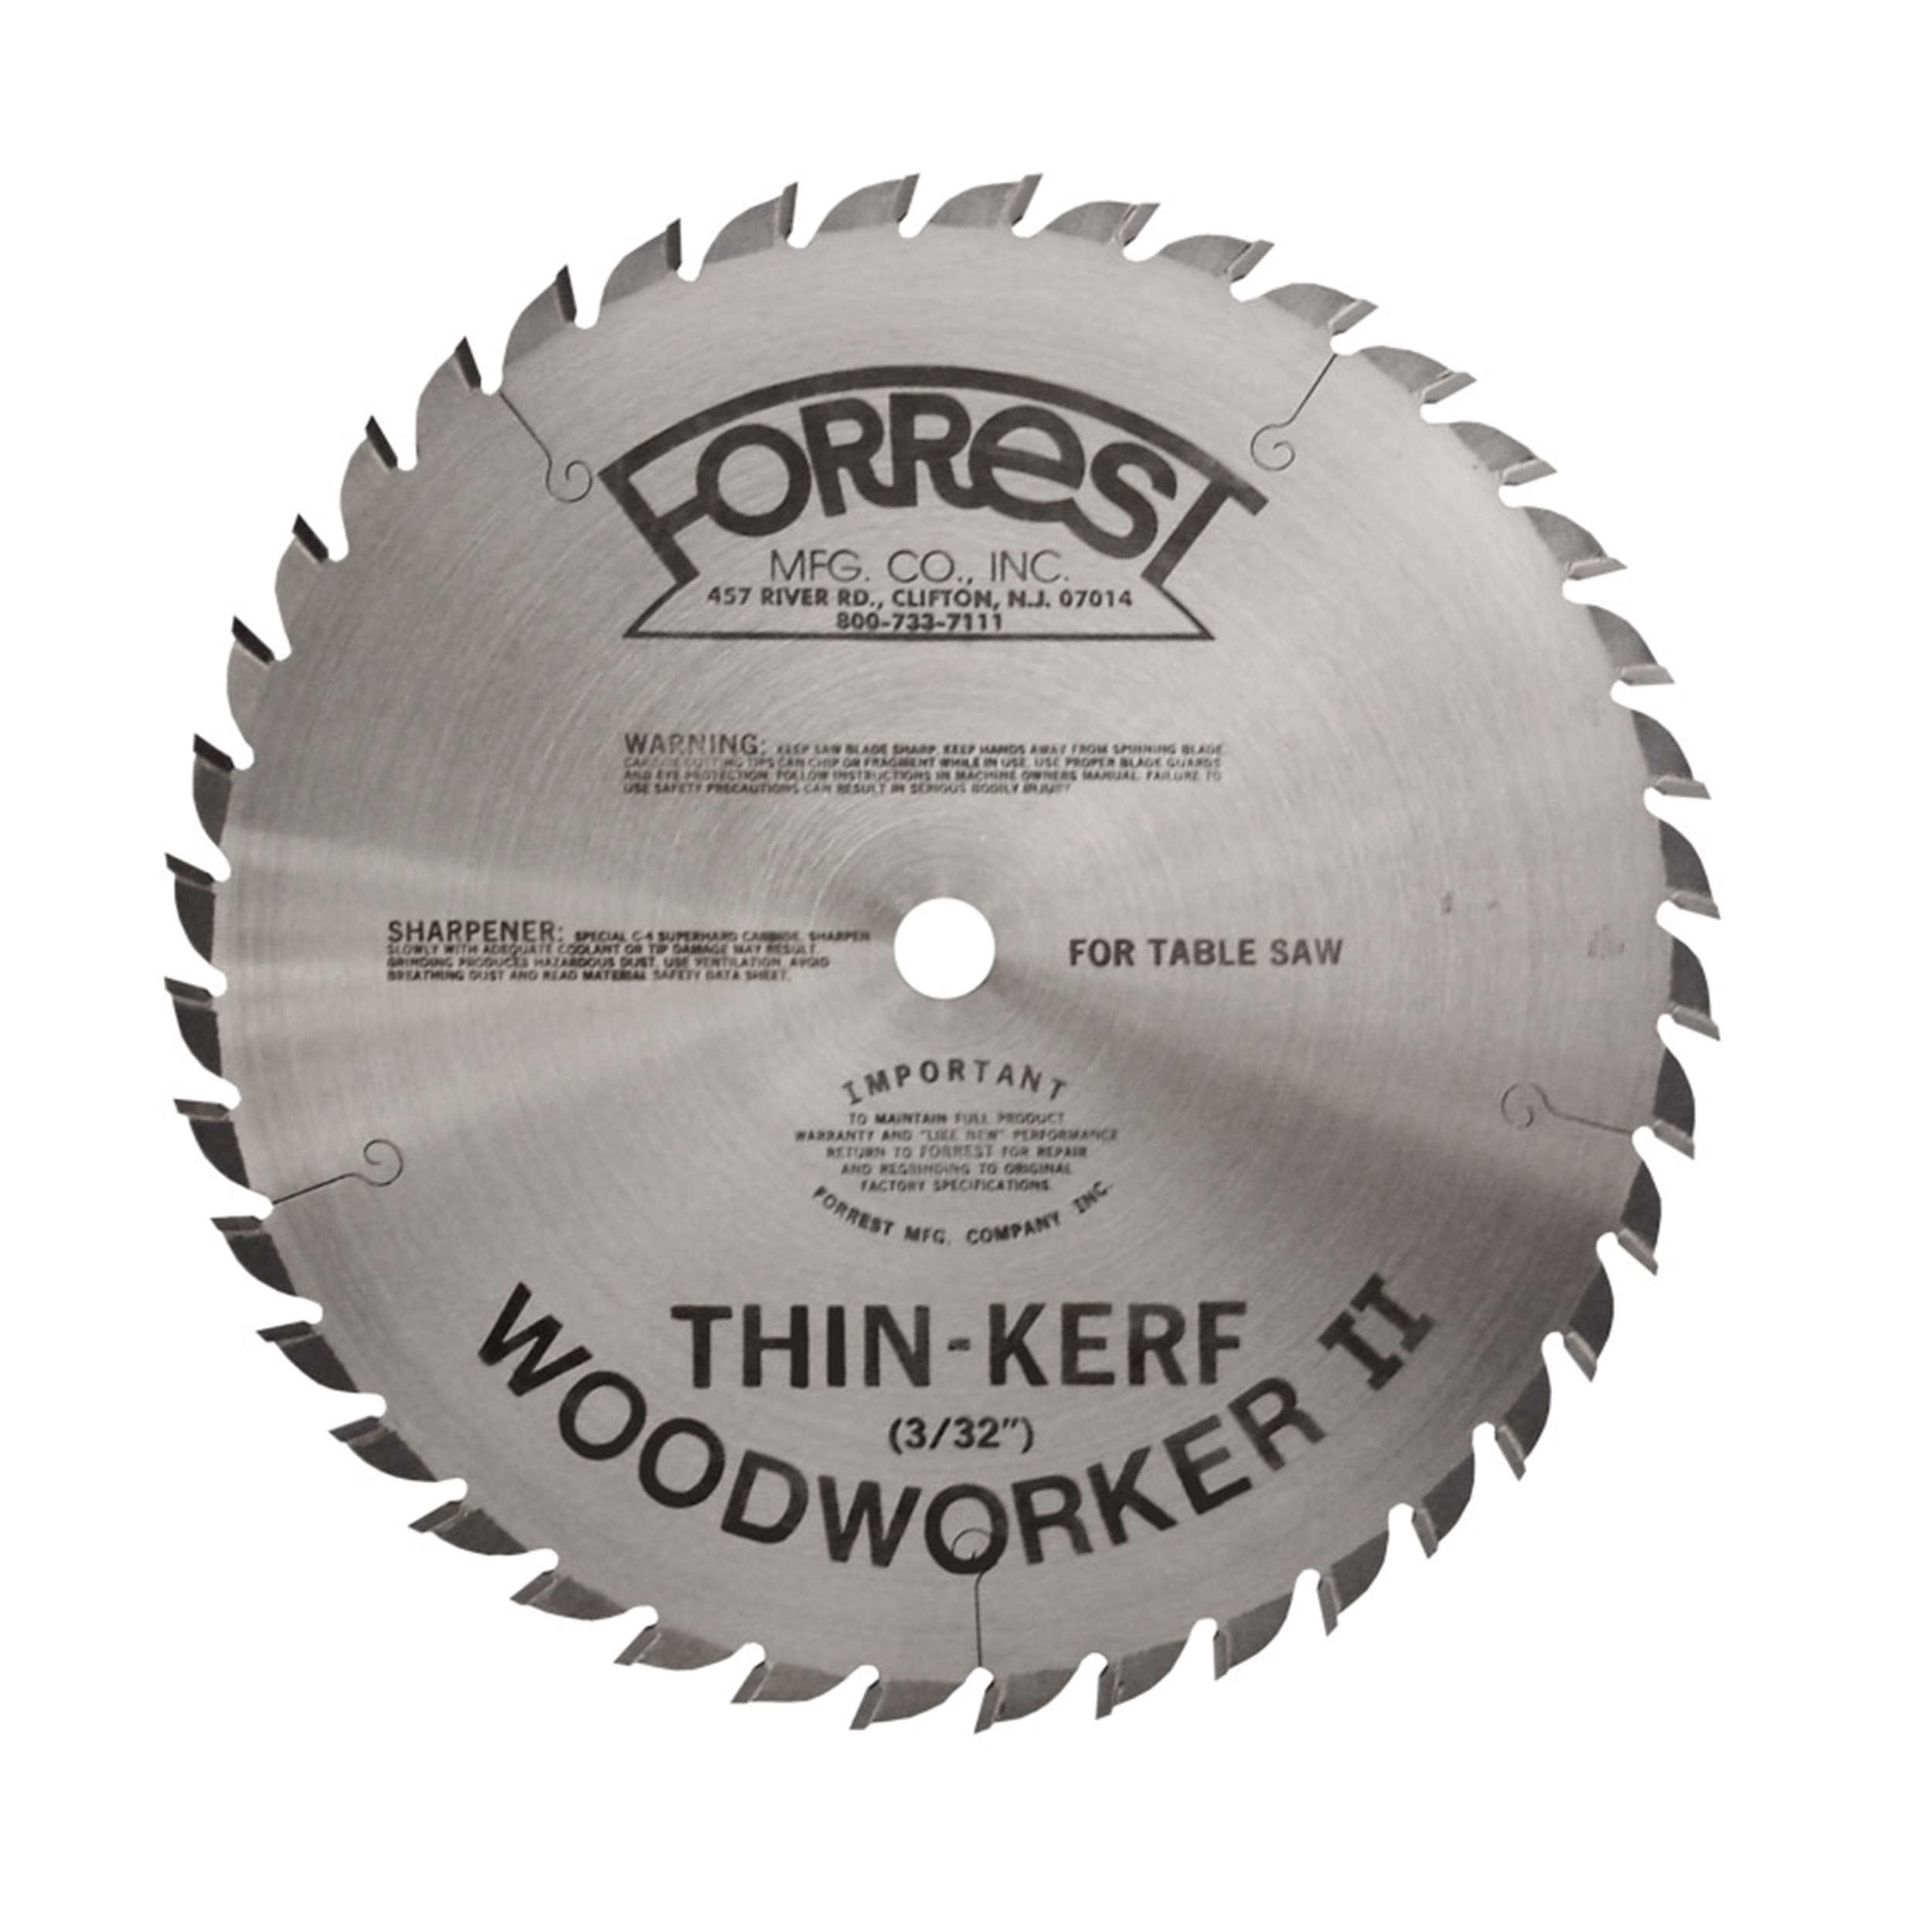 Ww10401100 Woodworker Ii 10" 40t #1 Grind Thin Kerf